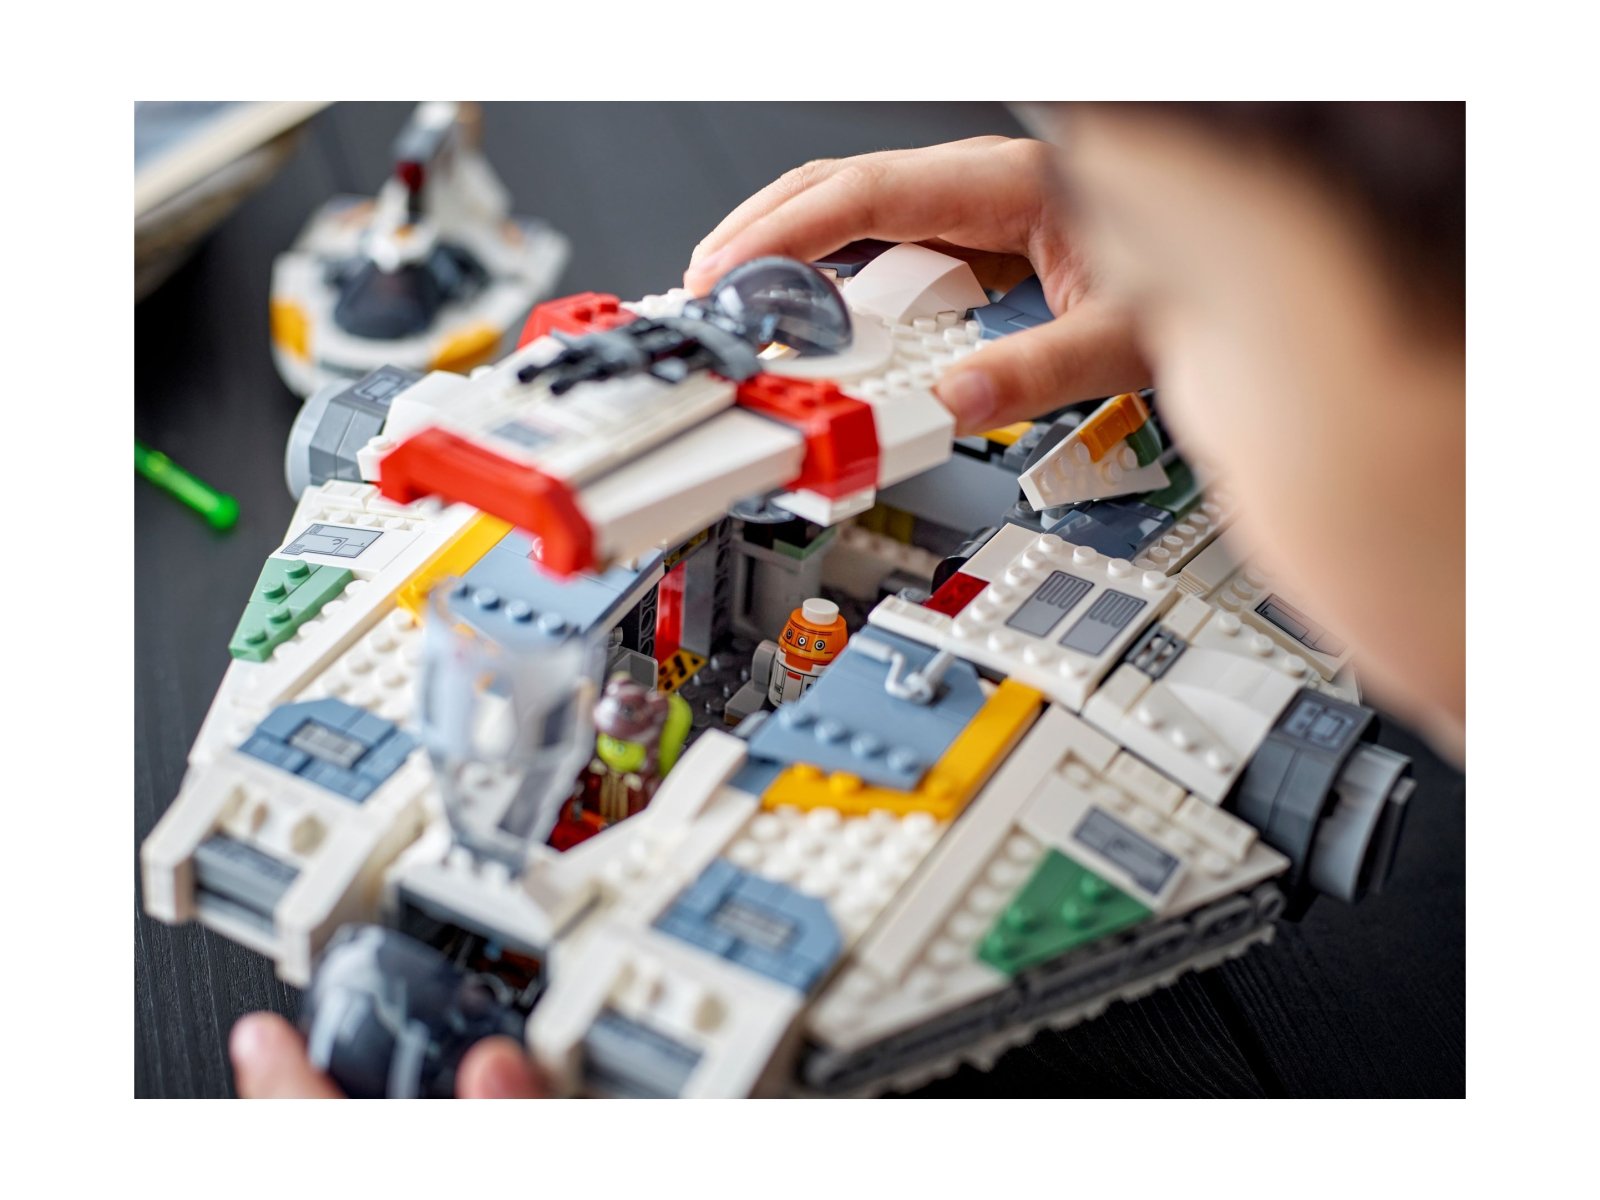 LEGO 75357 Star Wars Duch i Upiór II